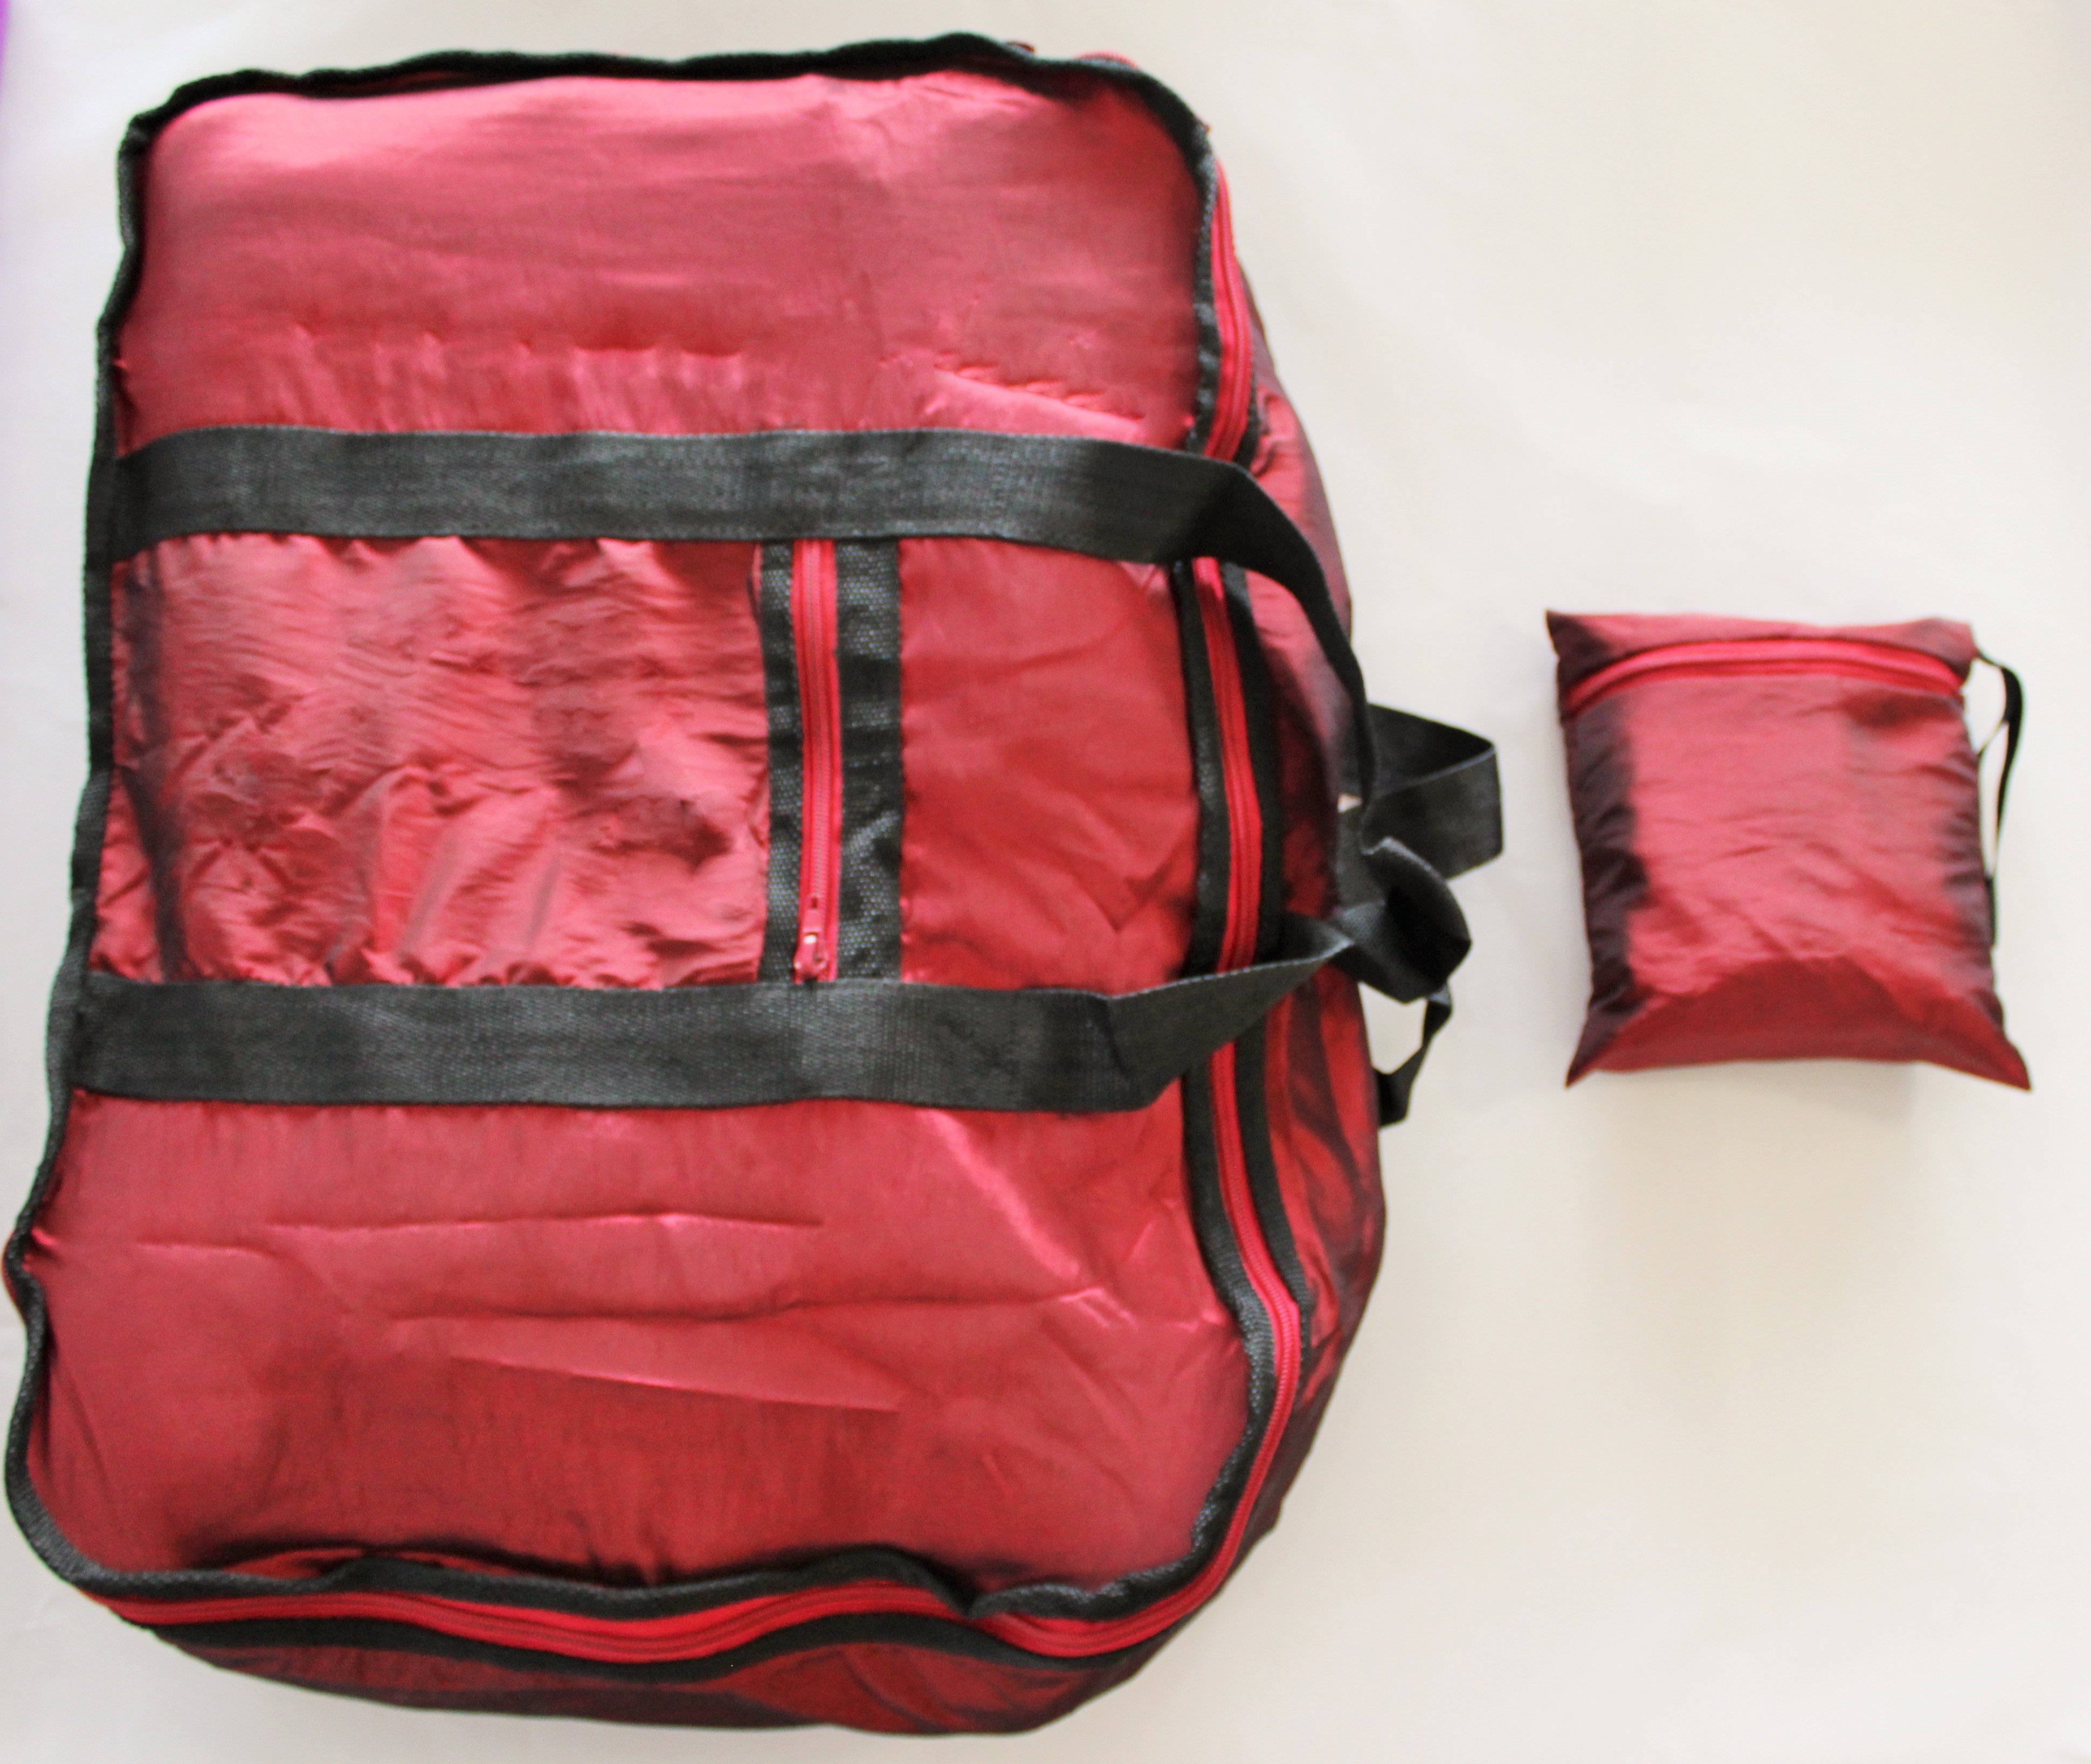 Lightweight Travel Bags